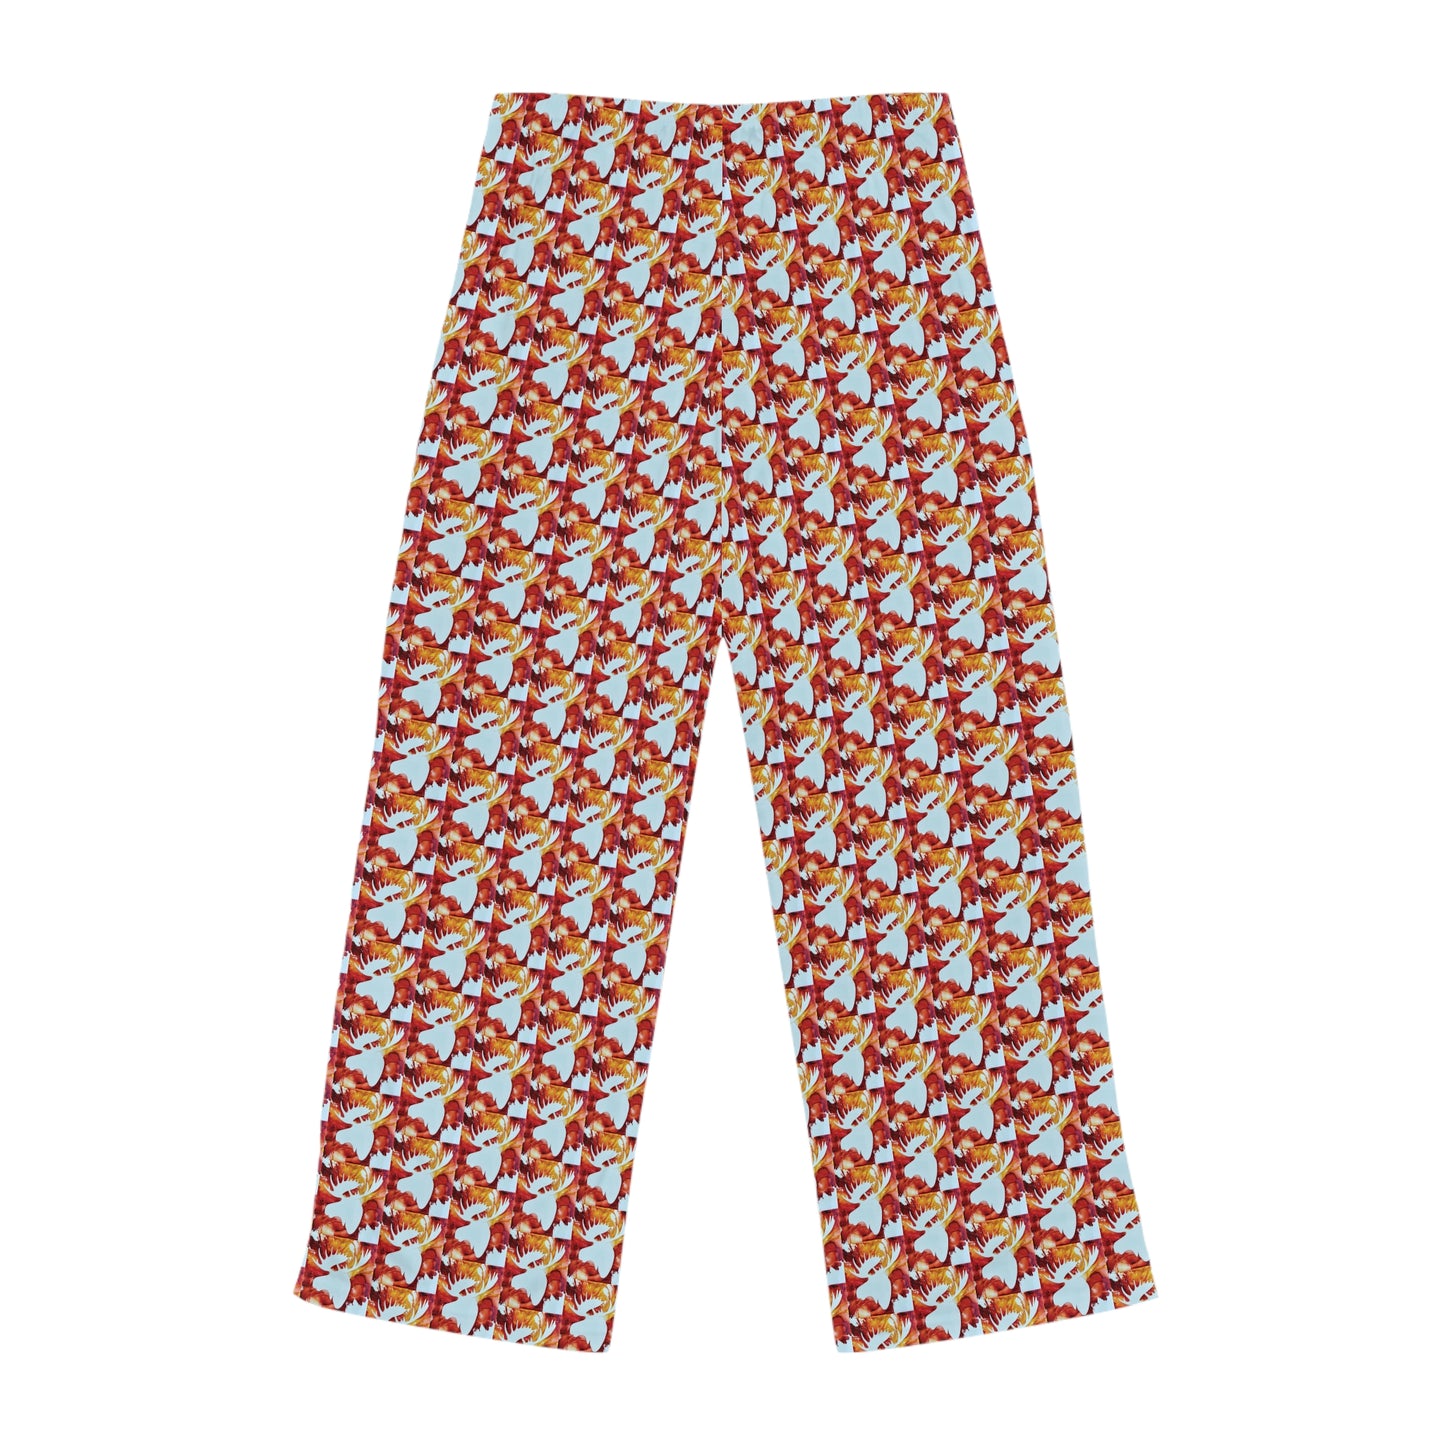 Original Art Moose Women's Pajama Pants